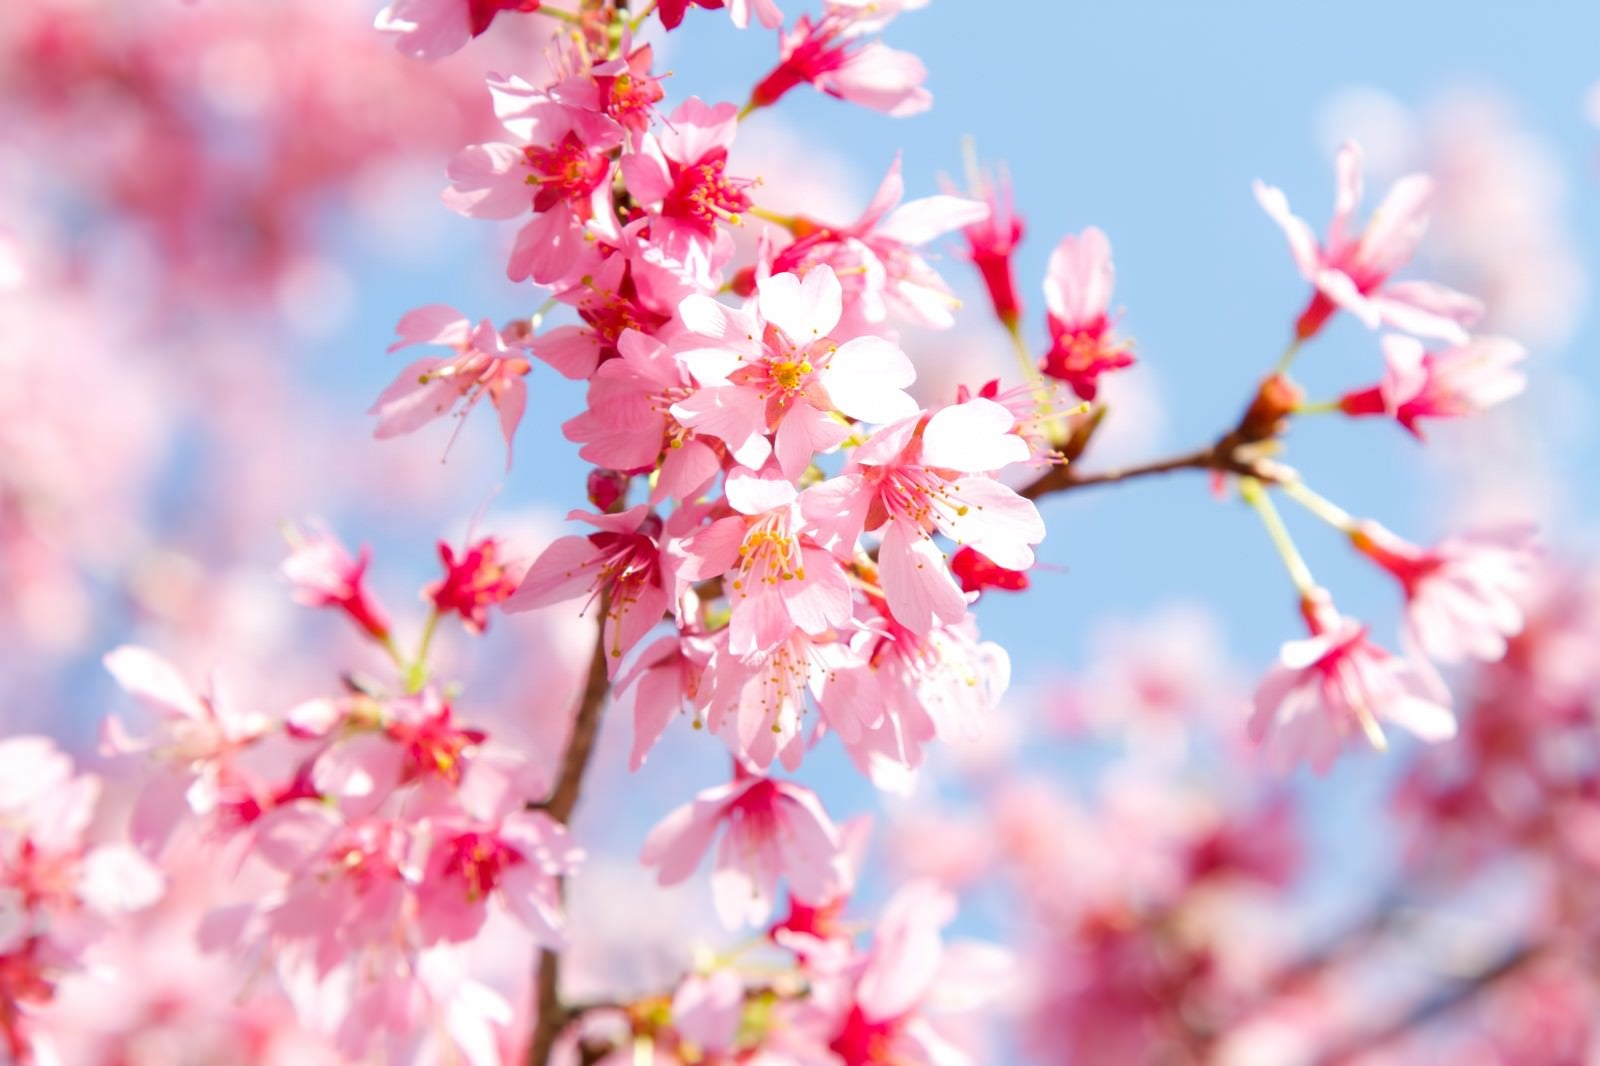 「春の訪れとピンクの桜」の写真